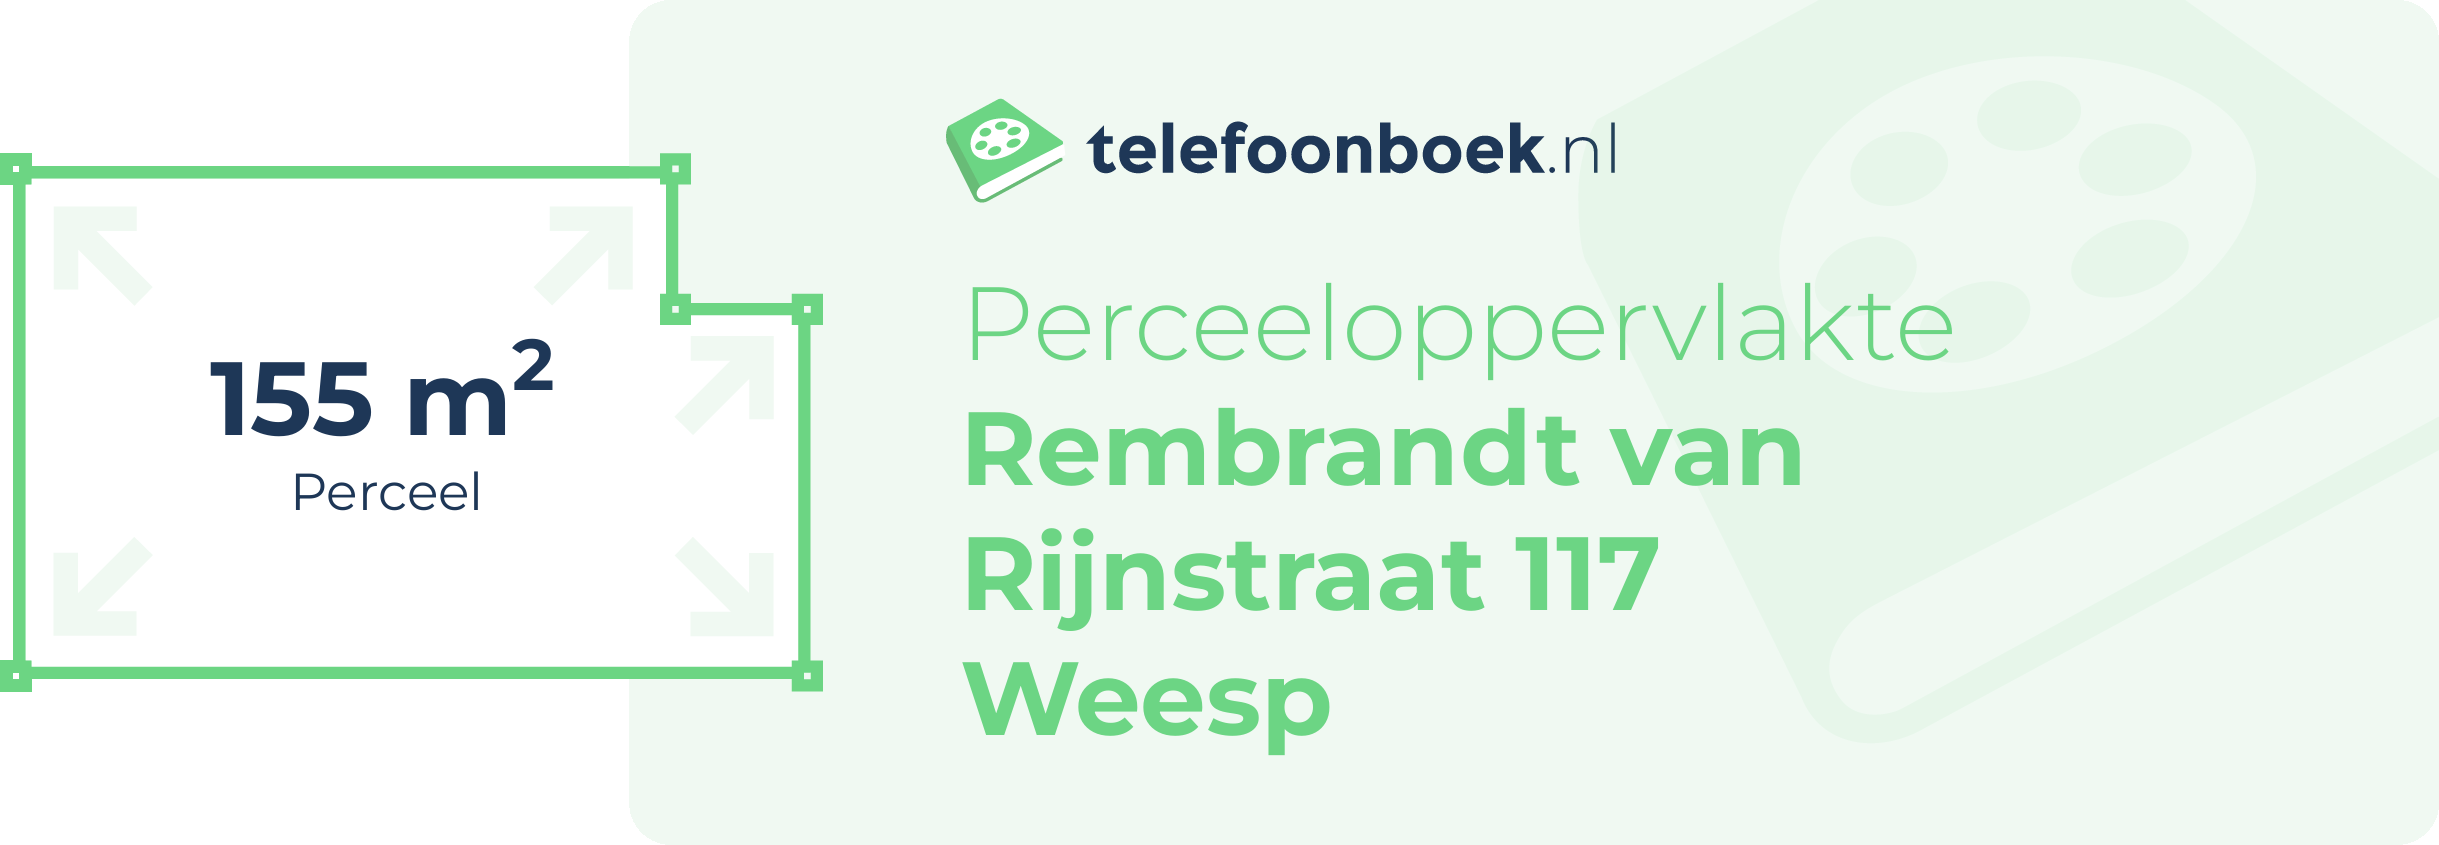 Perceeloppervlakte Rembrandt Van Rijnstraat 117 Weesp